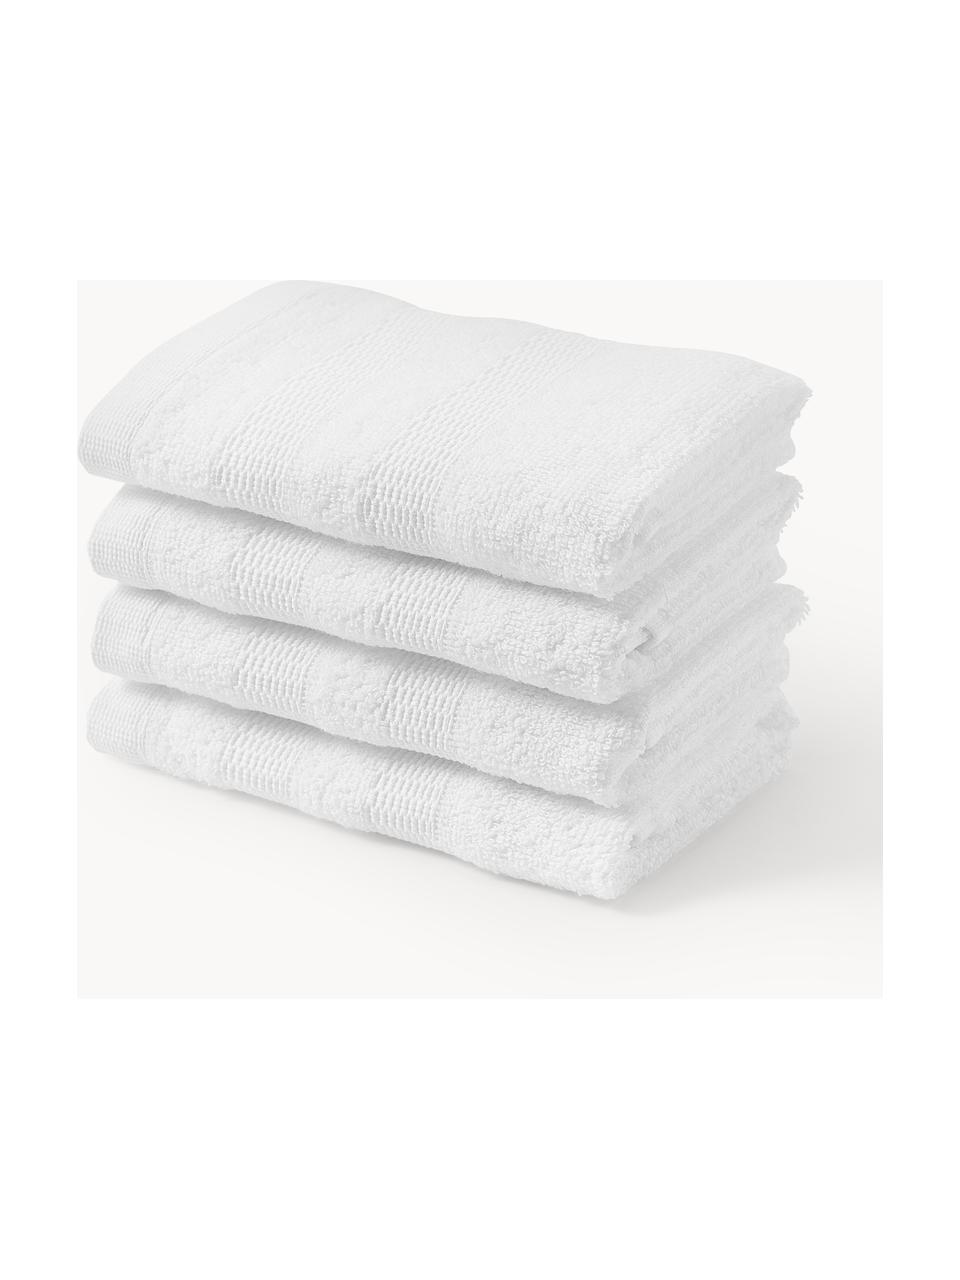 Ręczniki dla gości z bawełny Camila, 4 szt., Biały, Ręcznik dla gości, S 30 x D 50 cm